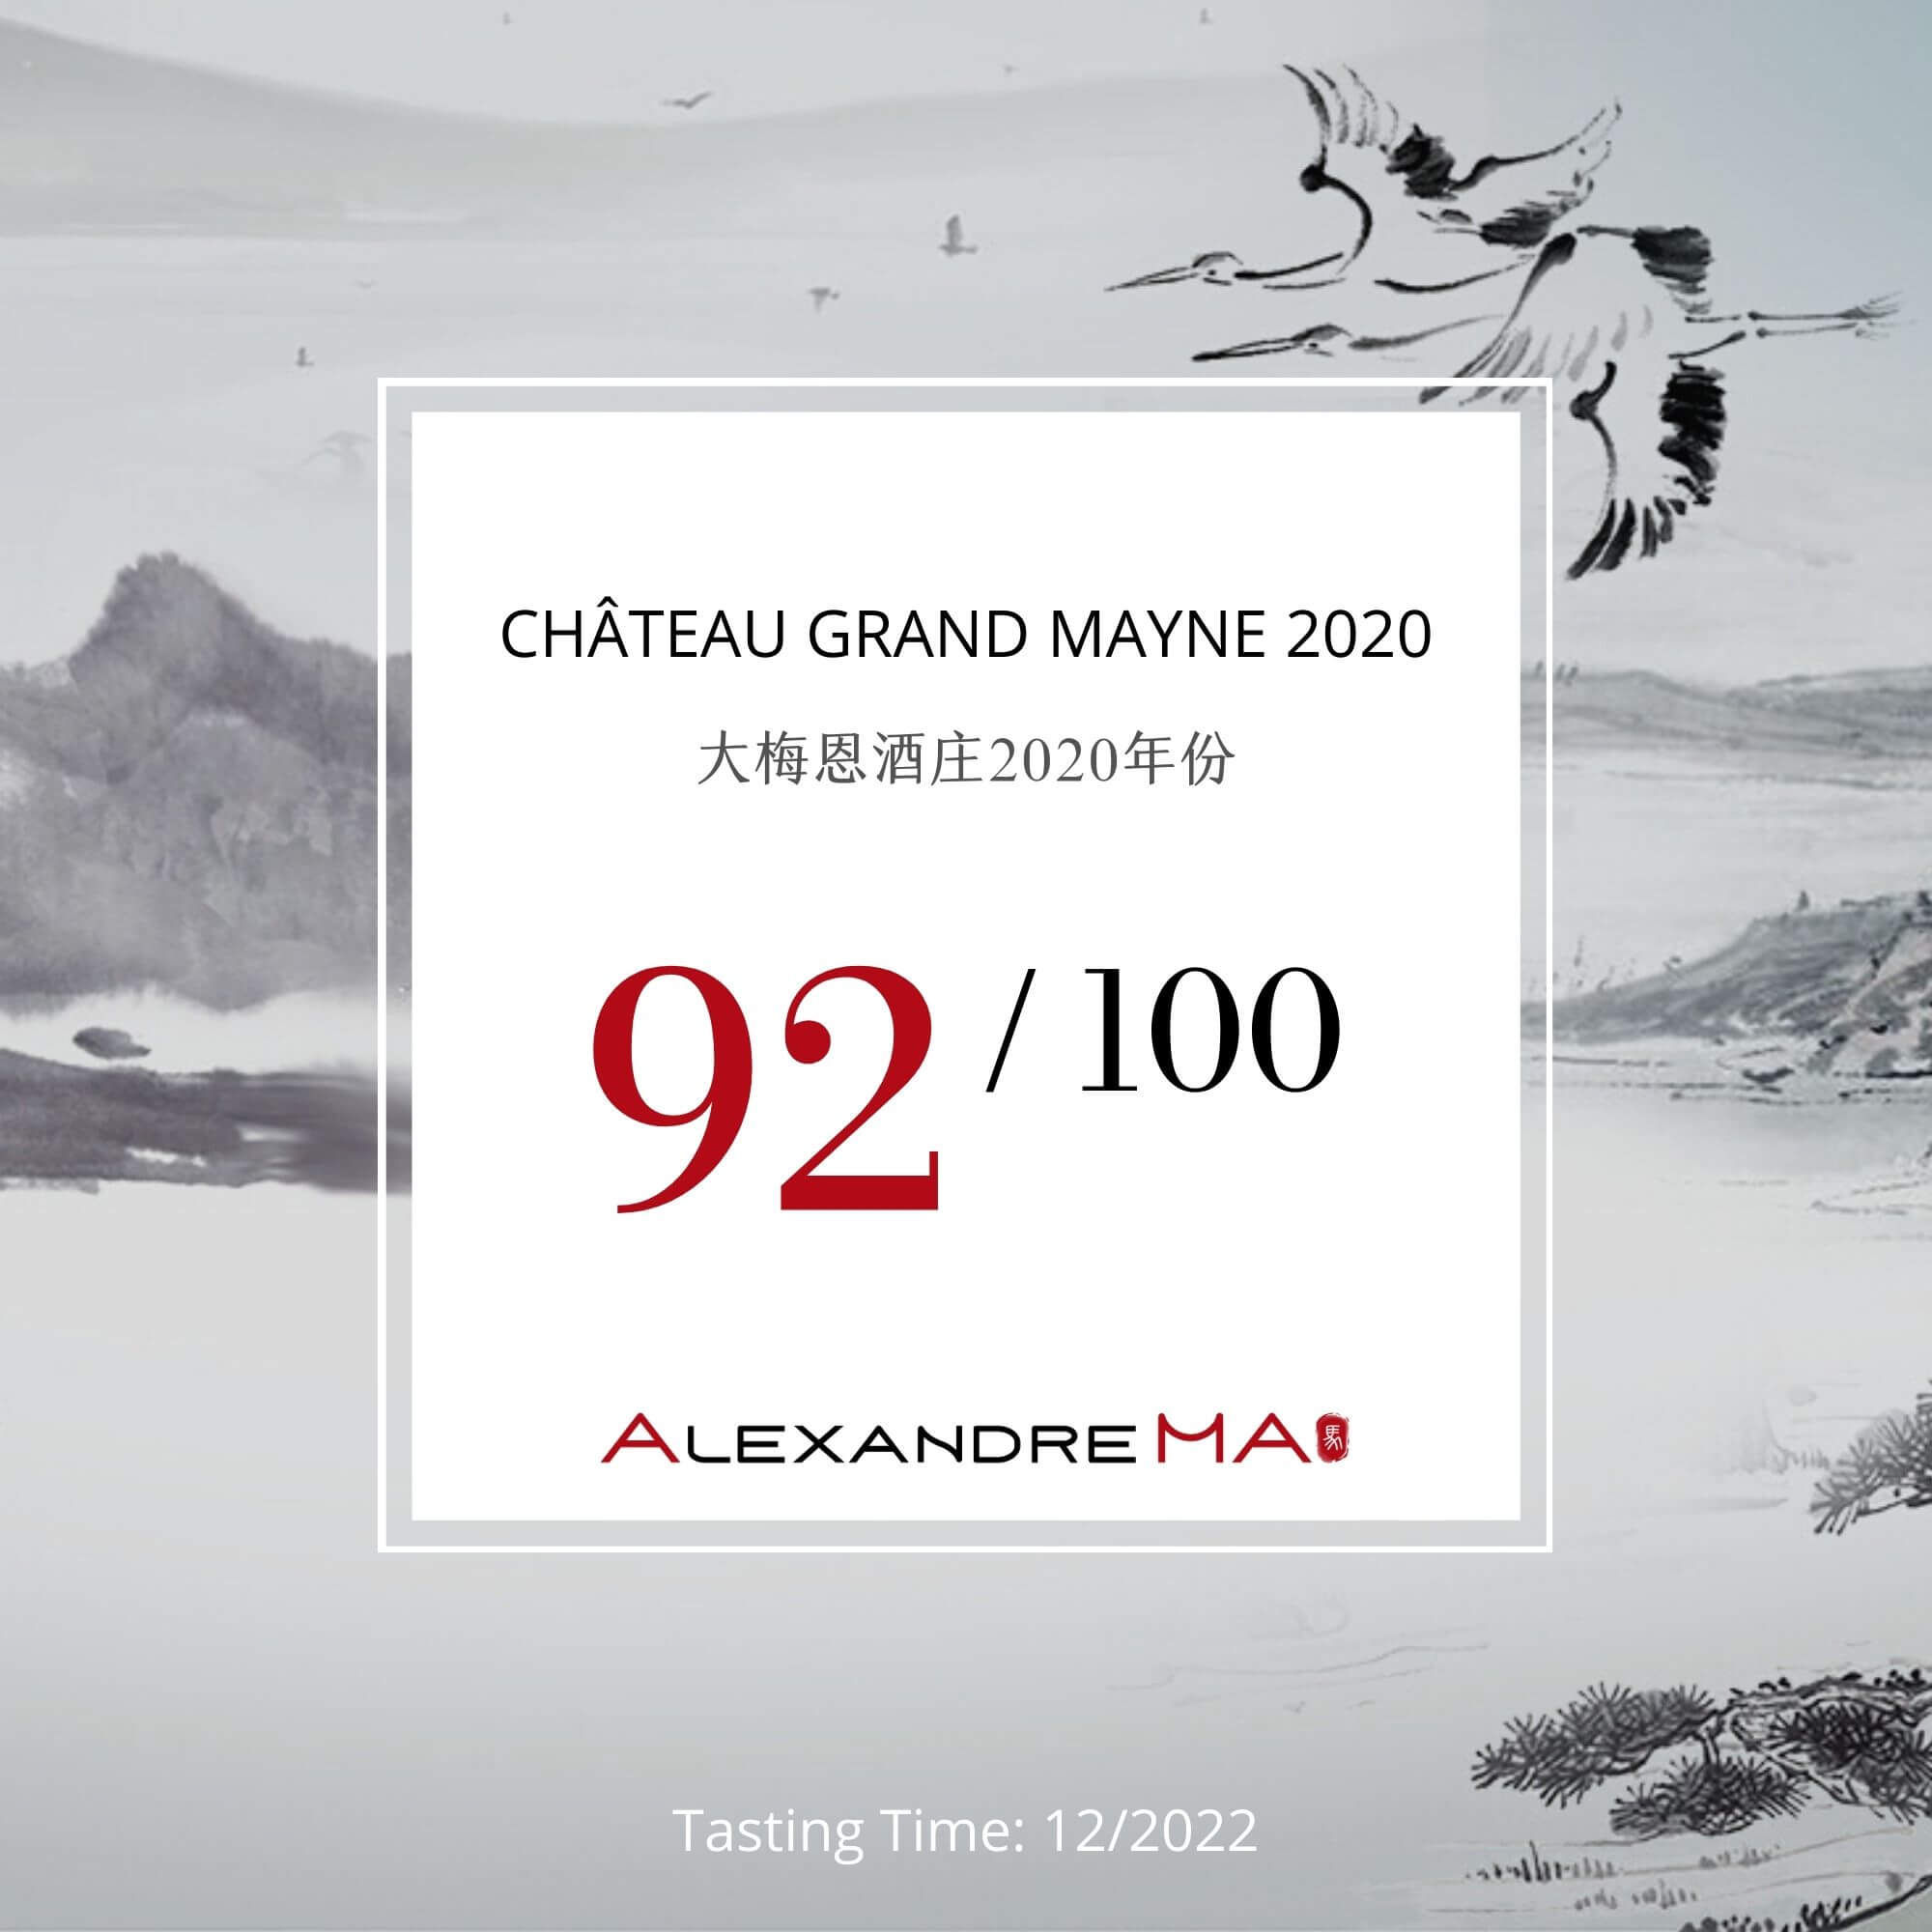 Château Grand Mayne 2020 - Alexandre MA